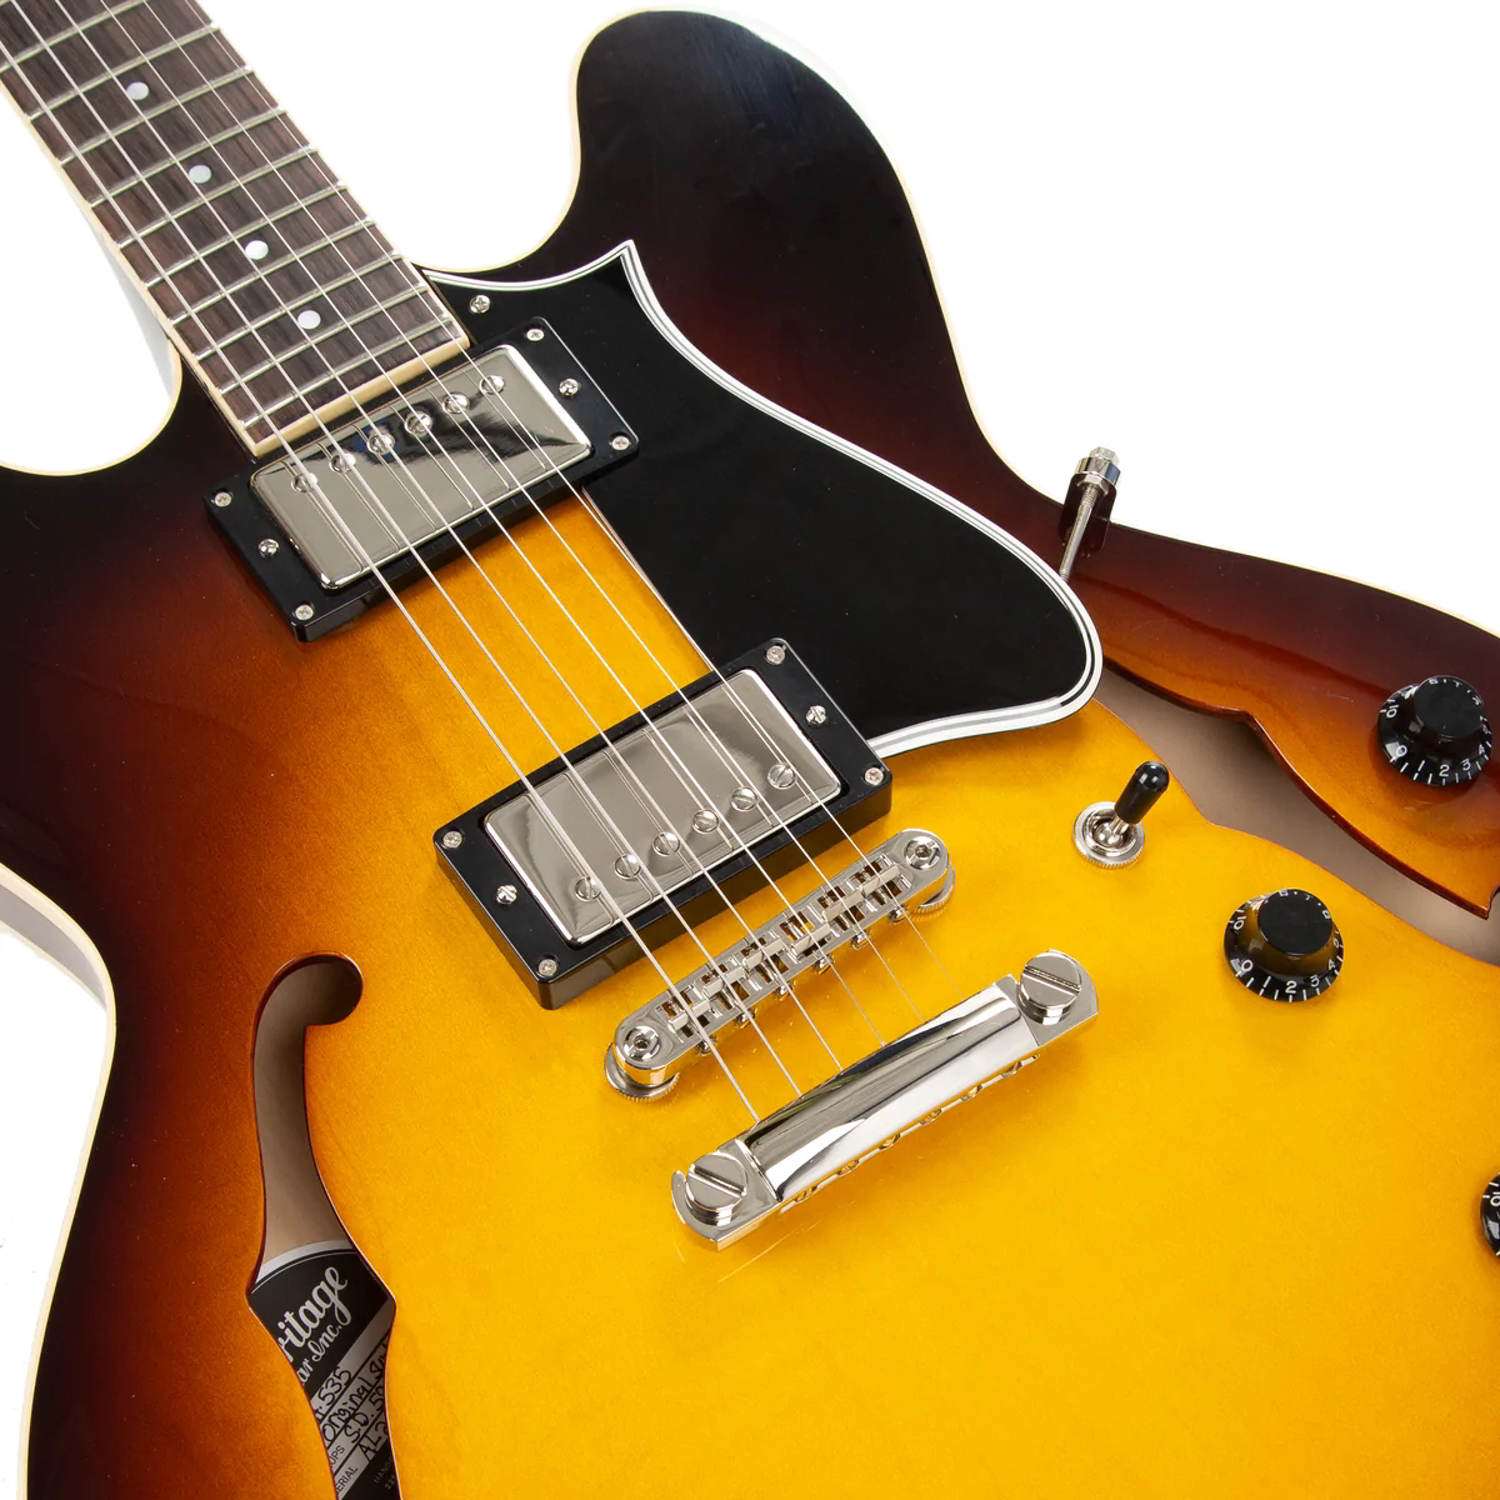 ギブソンのセミハードのギターケース、クロスなど新品の付属品多数付き 新品・未使用 - 9